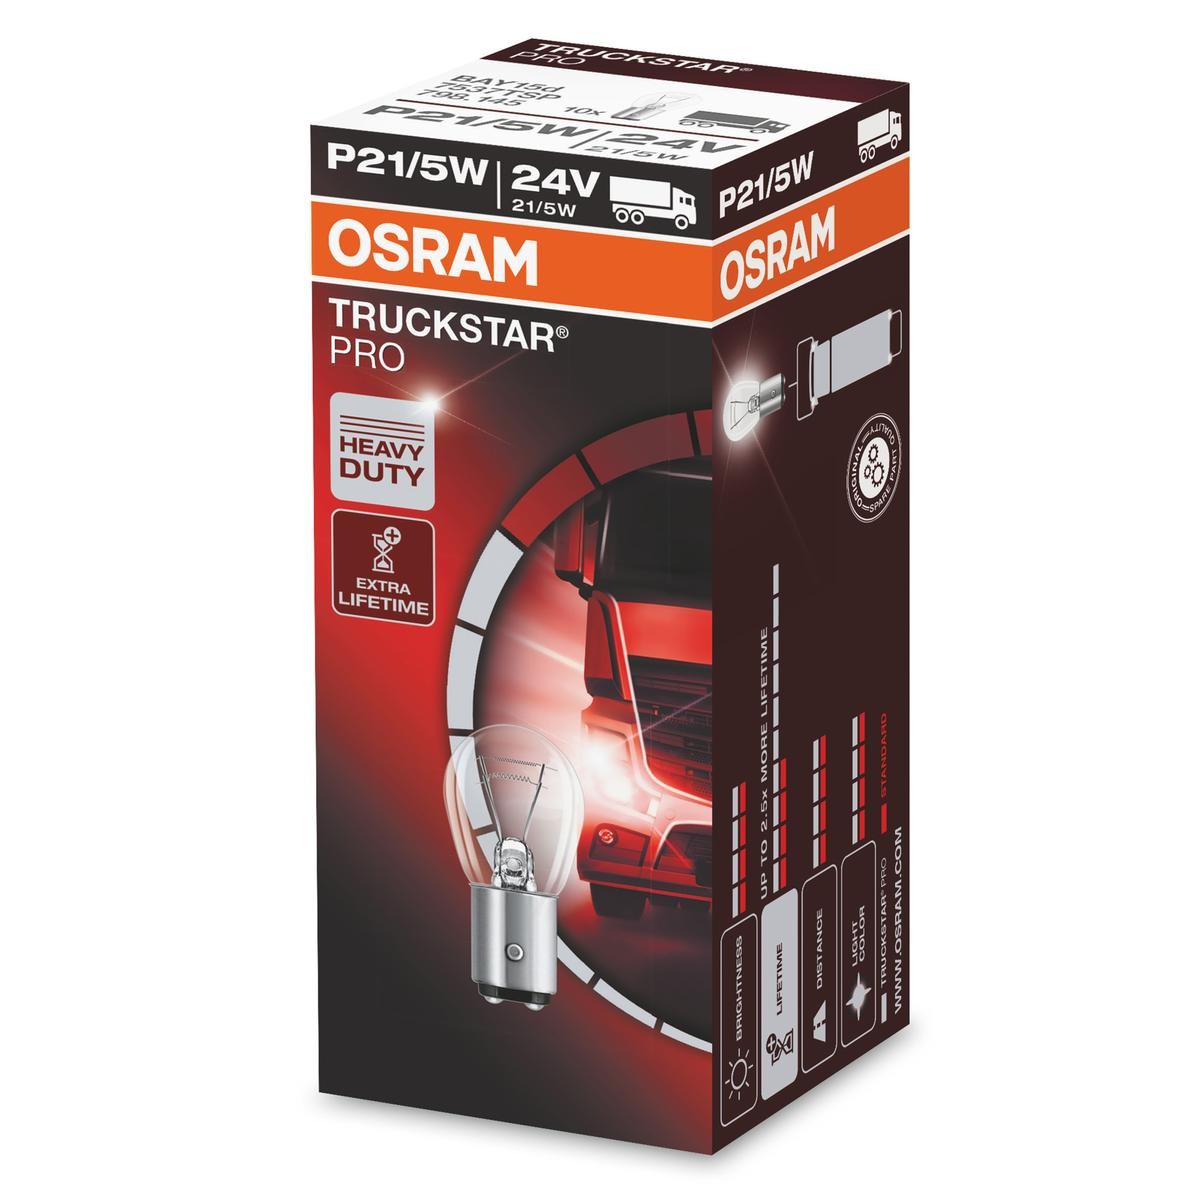 OSRAM TRUCKSTAR PRO 7537TSP Bulb, indicator 24V 21/5W, P21/5W